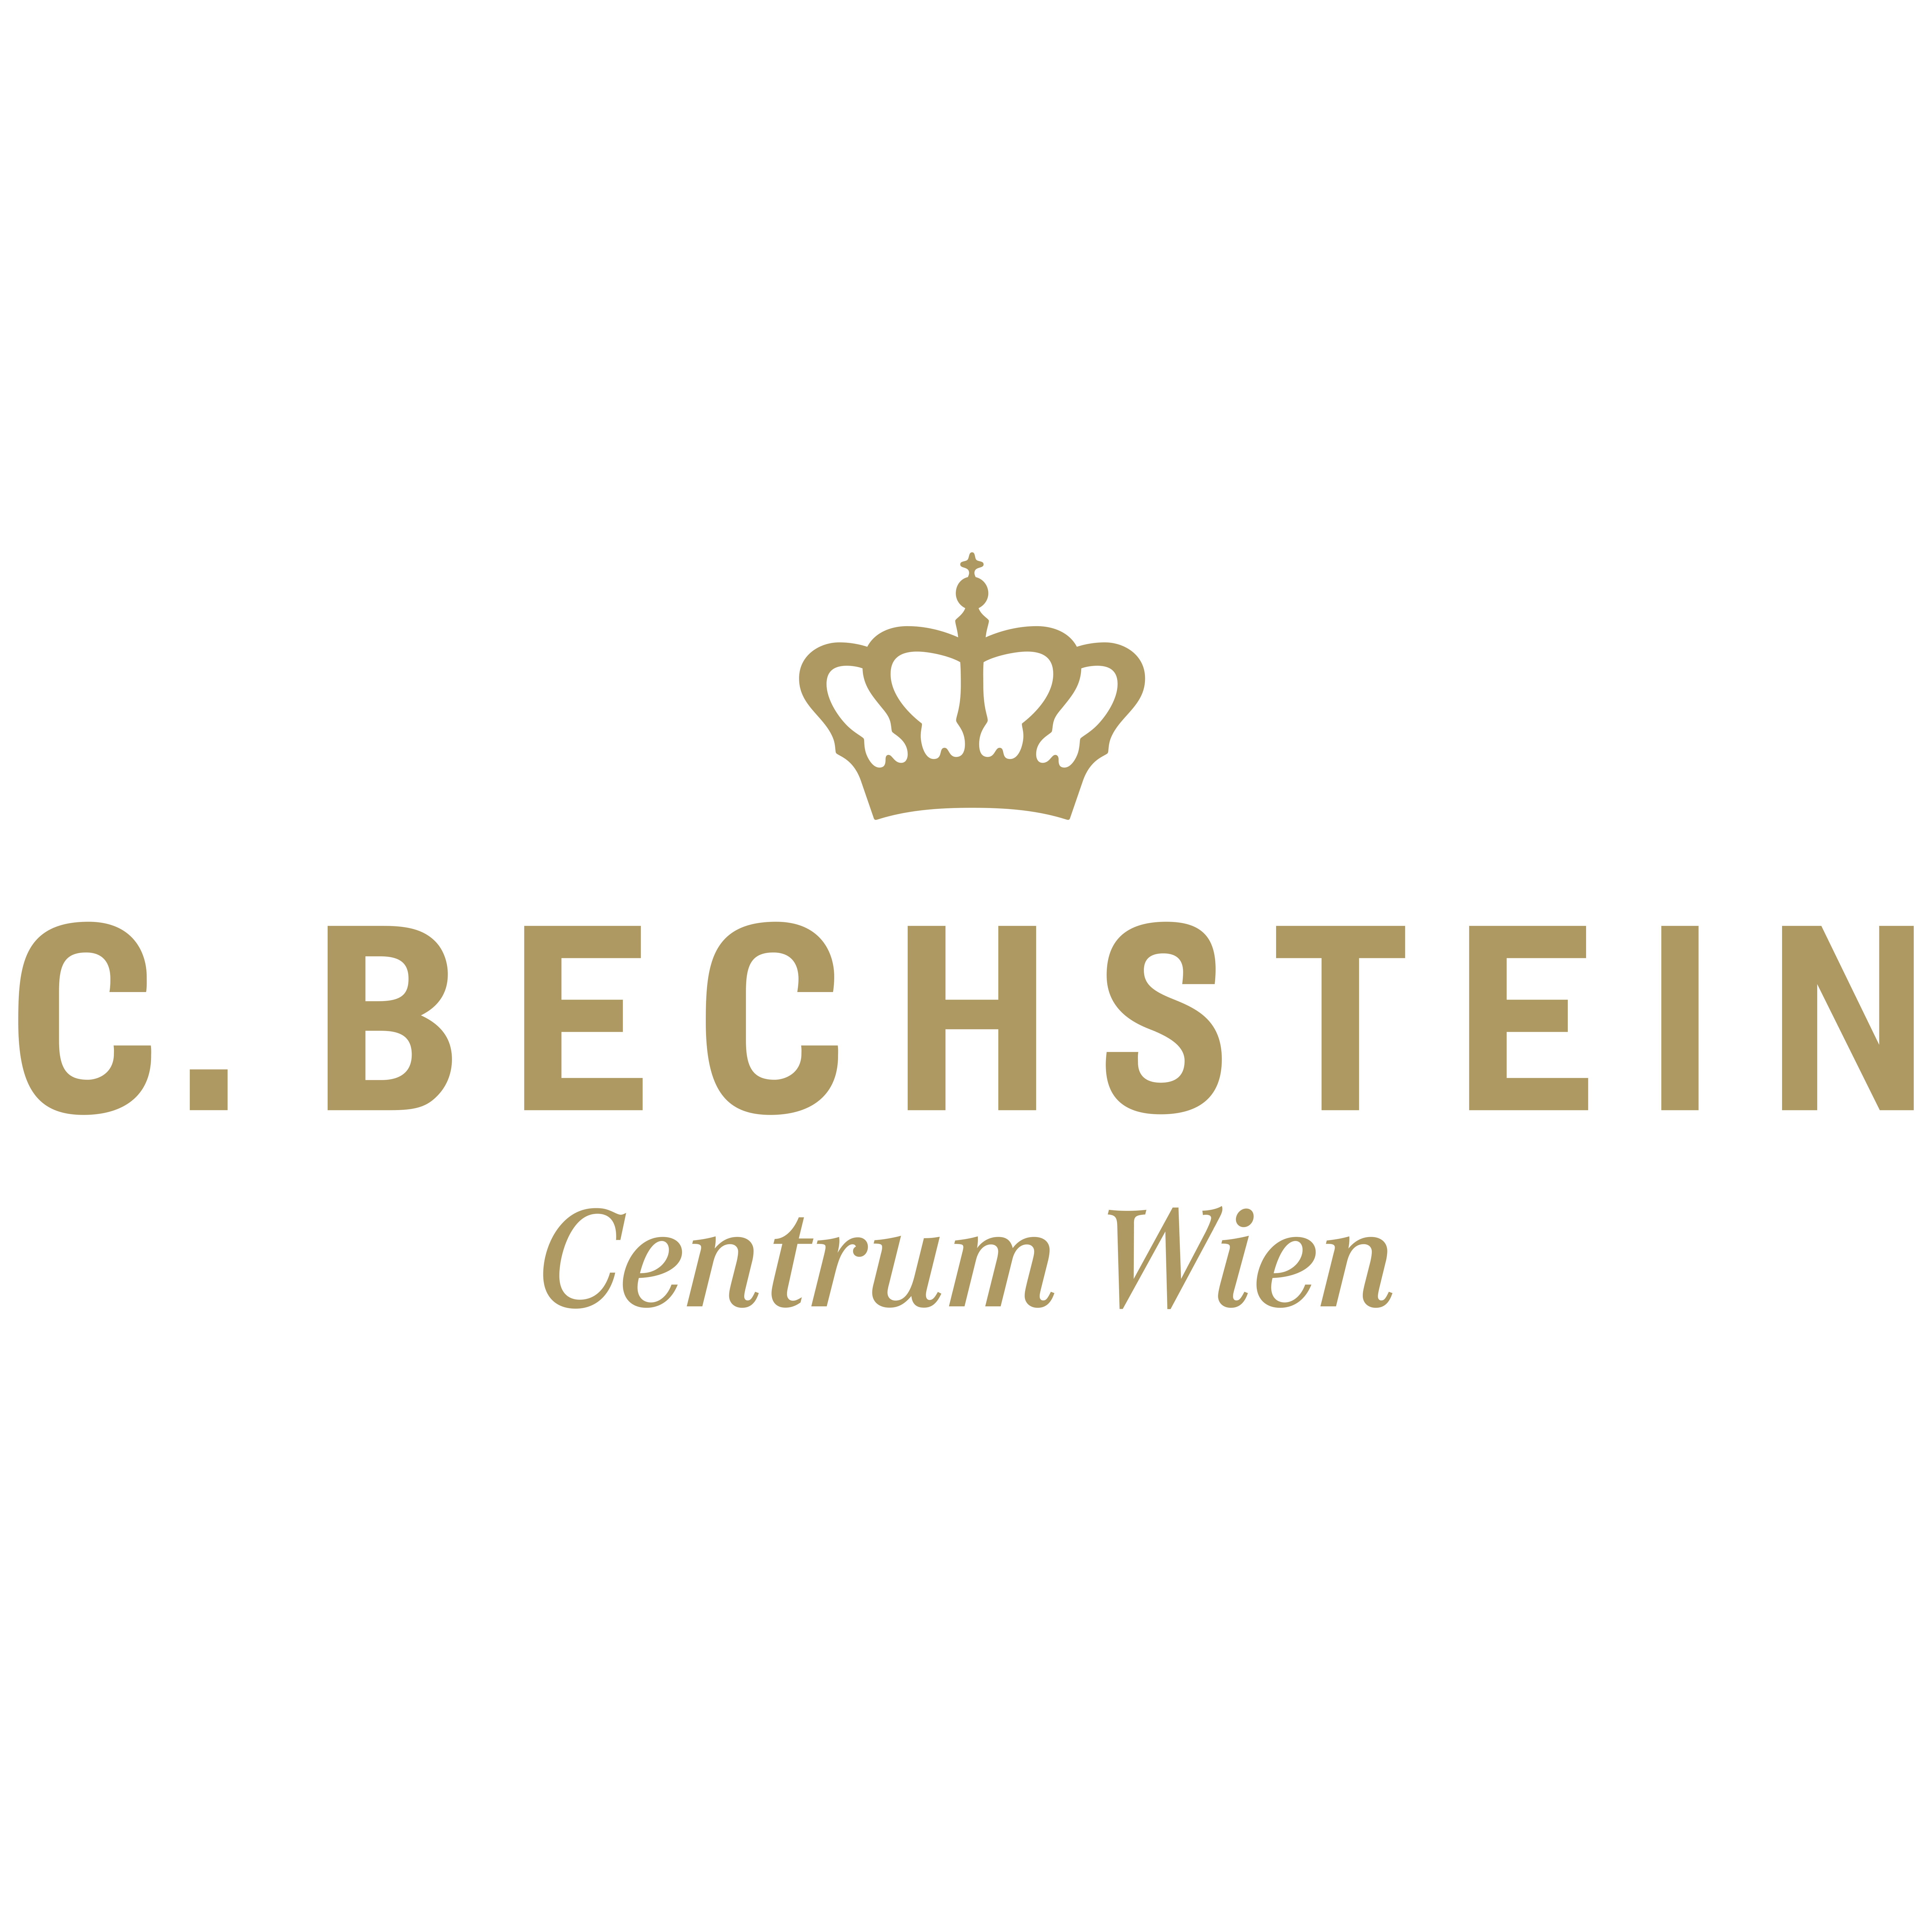 Wenn Sie einen Flügel oder ein Klavier kaufen möchten, kommen Sie ins neue C. Bechstein Centrum Wien und lernen Sie alle unsere Marken und Linien kennen, oder informieren Sie sich über die verschiedenen Möglichkeiten der Zusammenarbeit. Bei uns finden Sie